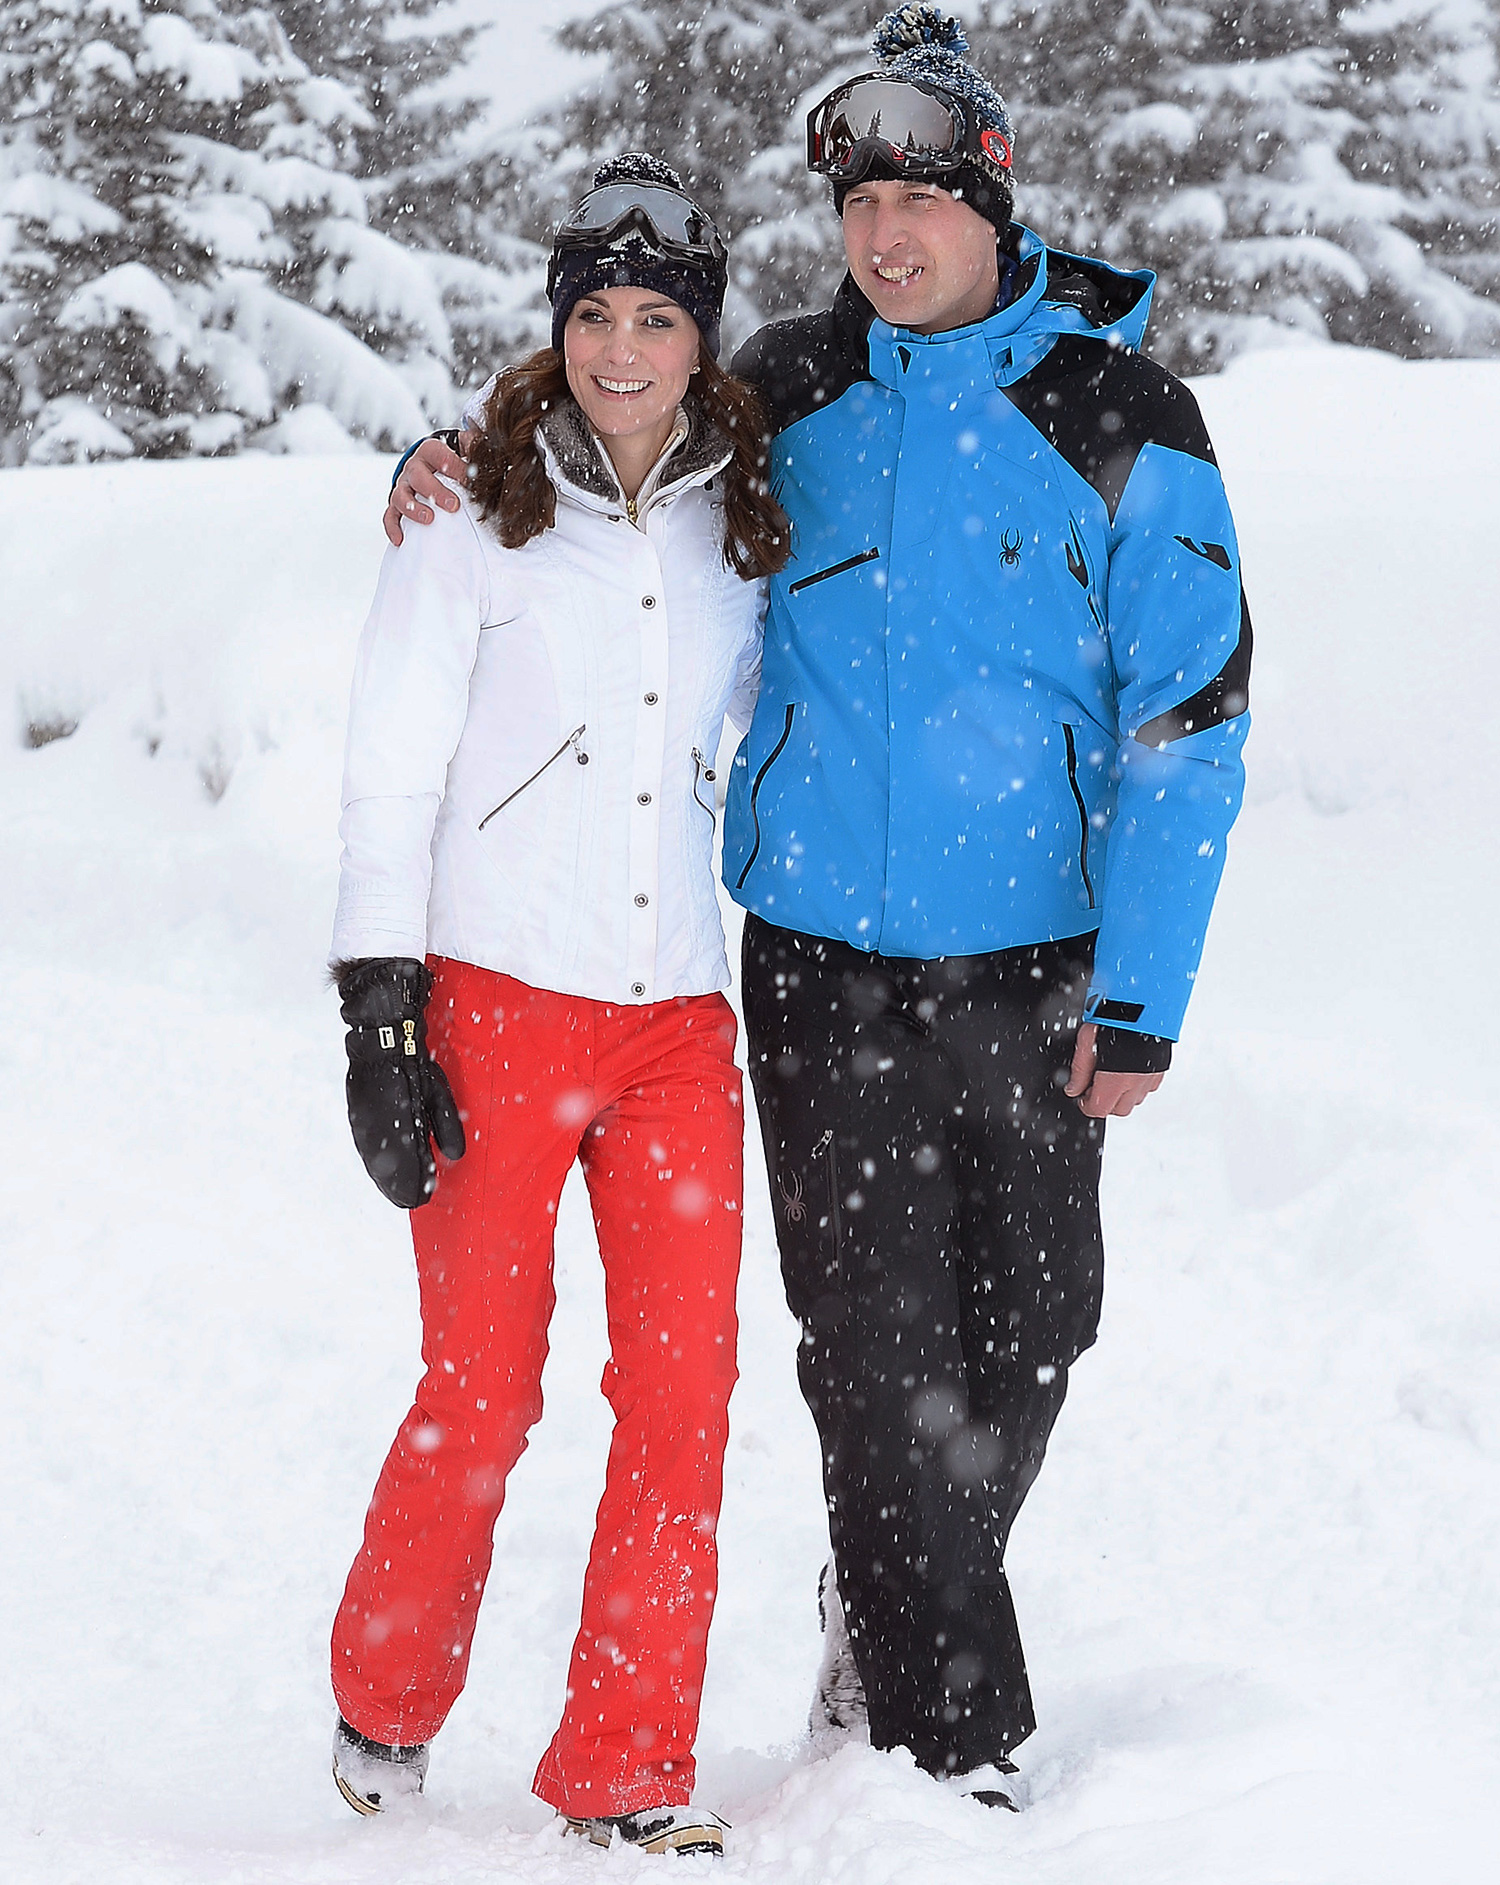 威廉凱特法國阿爾卑斯度假_夏綠蒂小公主、喬治王子玩雪初體驗1.jpg